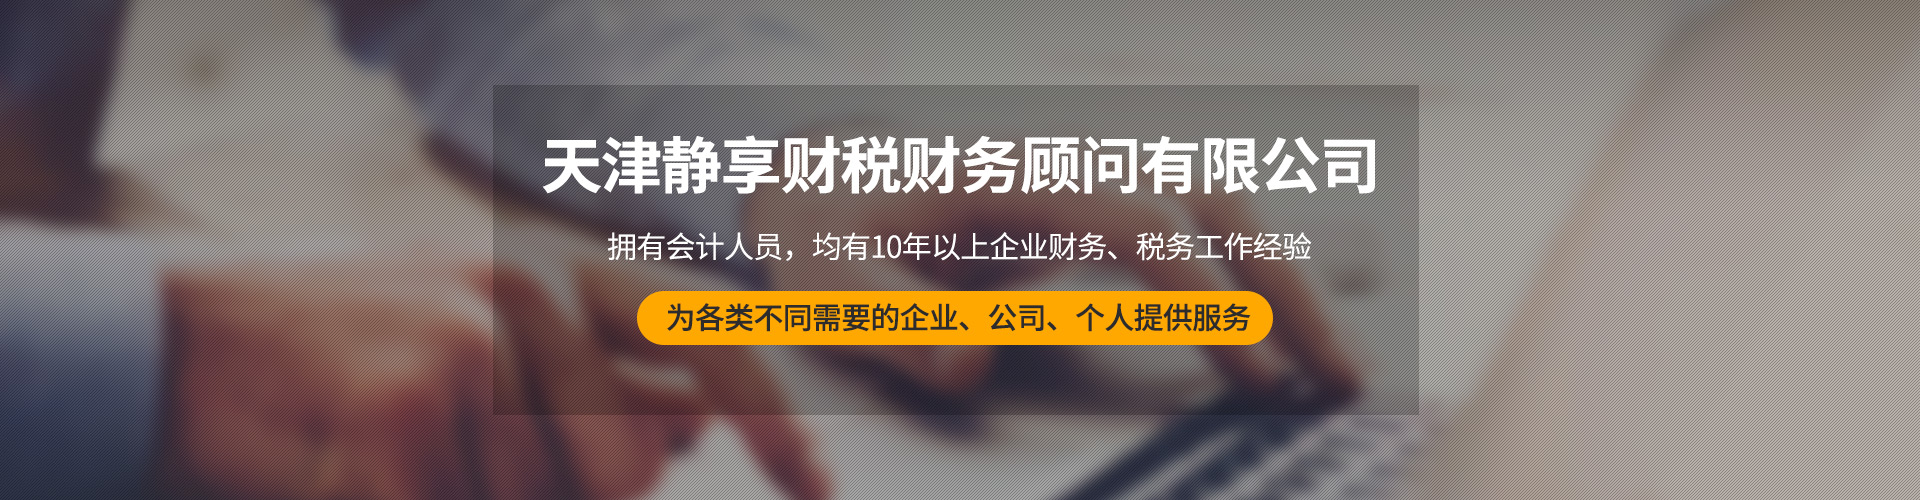 天津东丽 设立个体户工商营业执照 手续